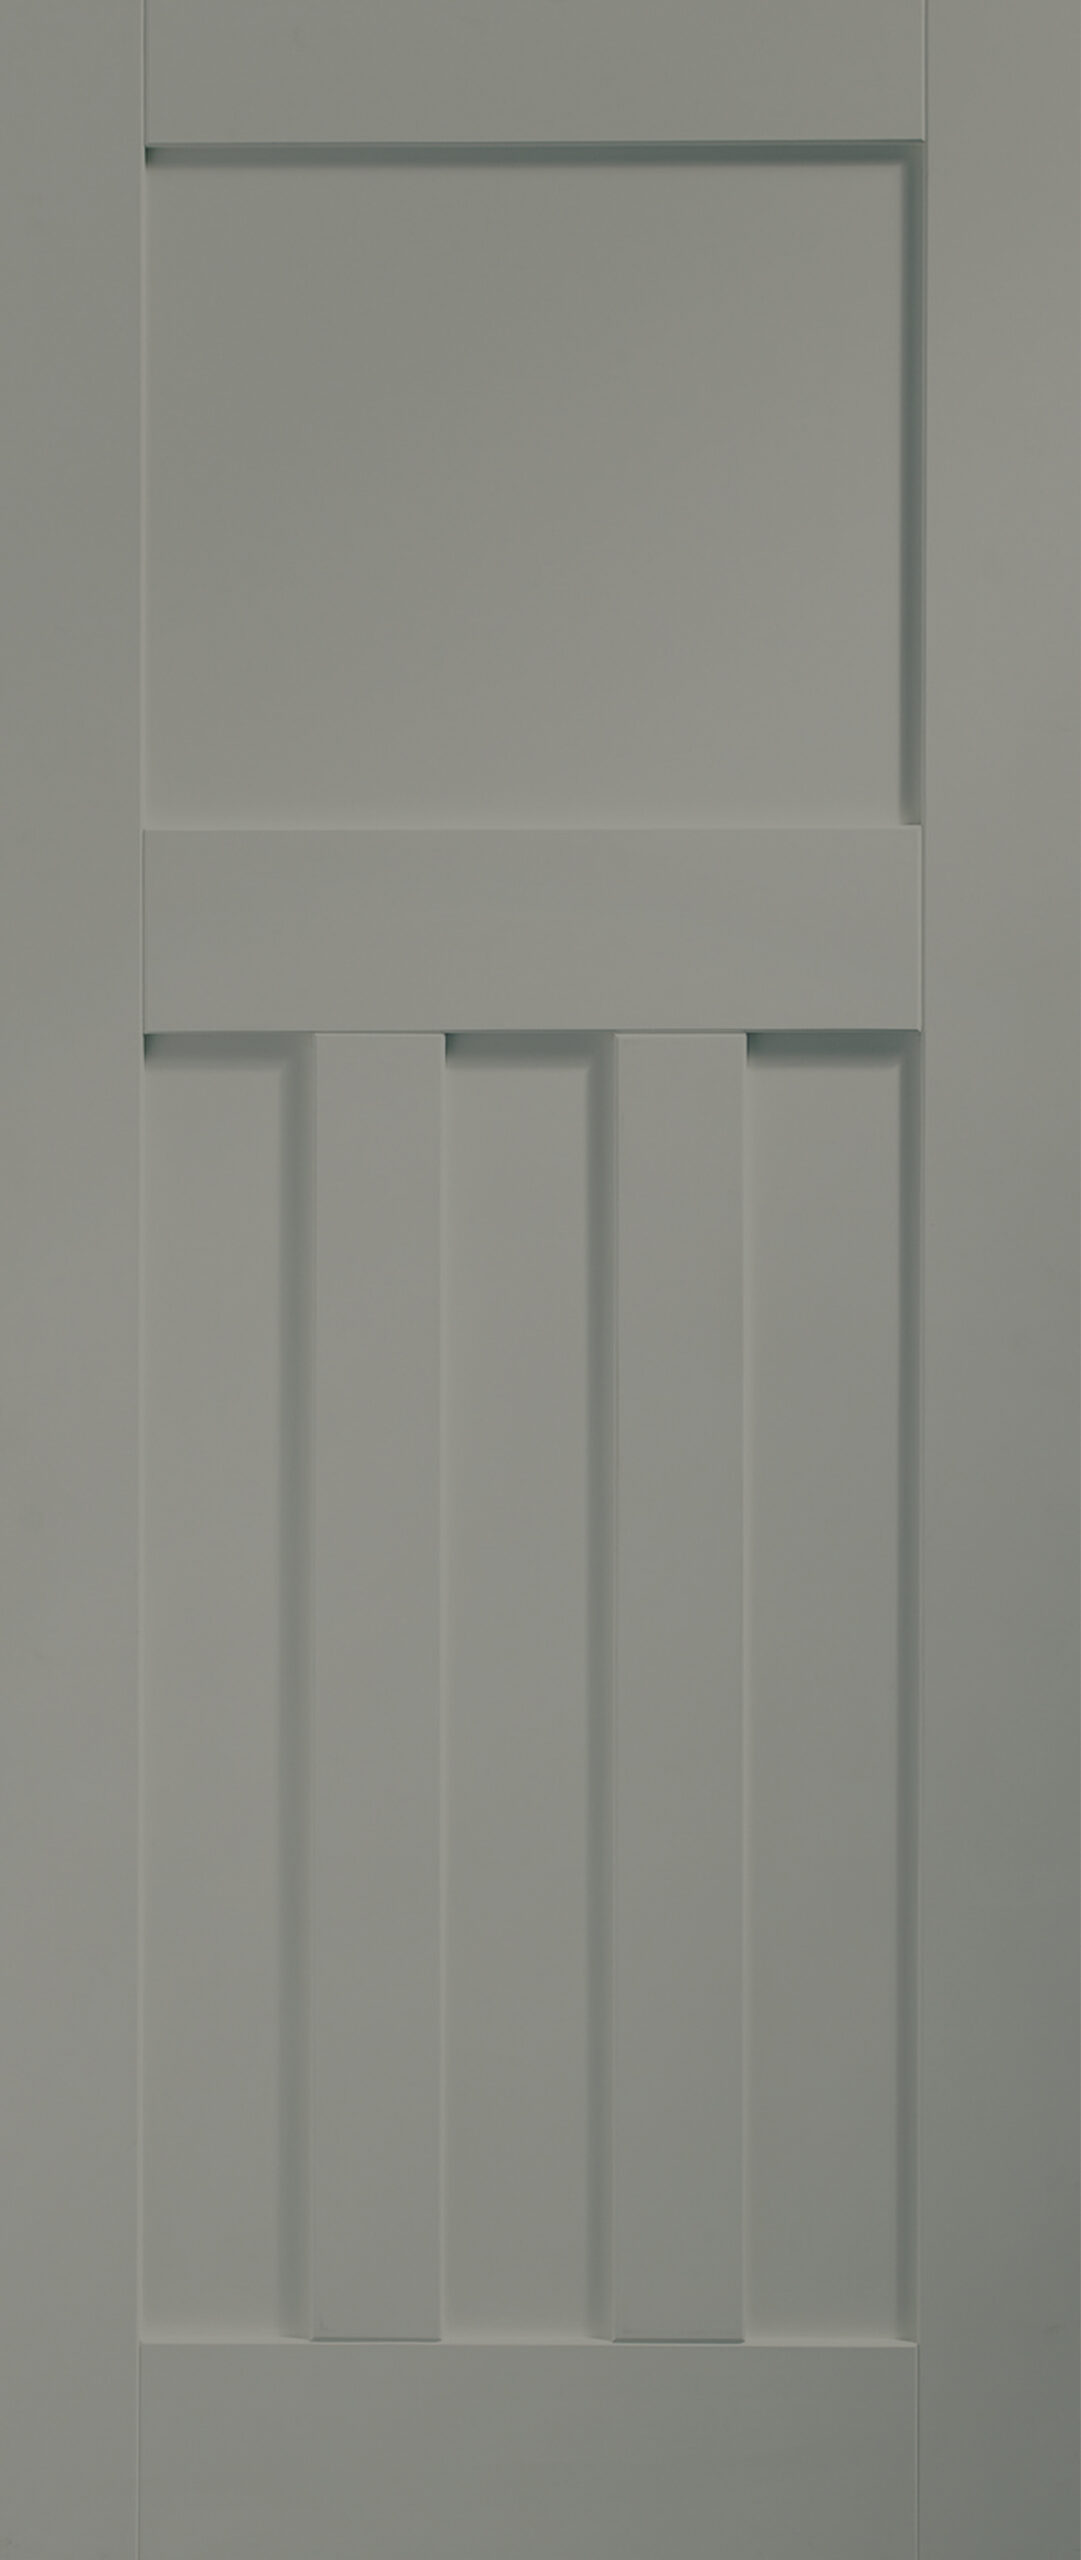 Internal White Primed DX Door Fire Door – 1981 x 762 x 44 mm, Slate